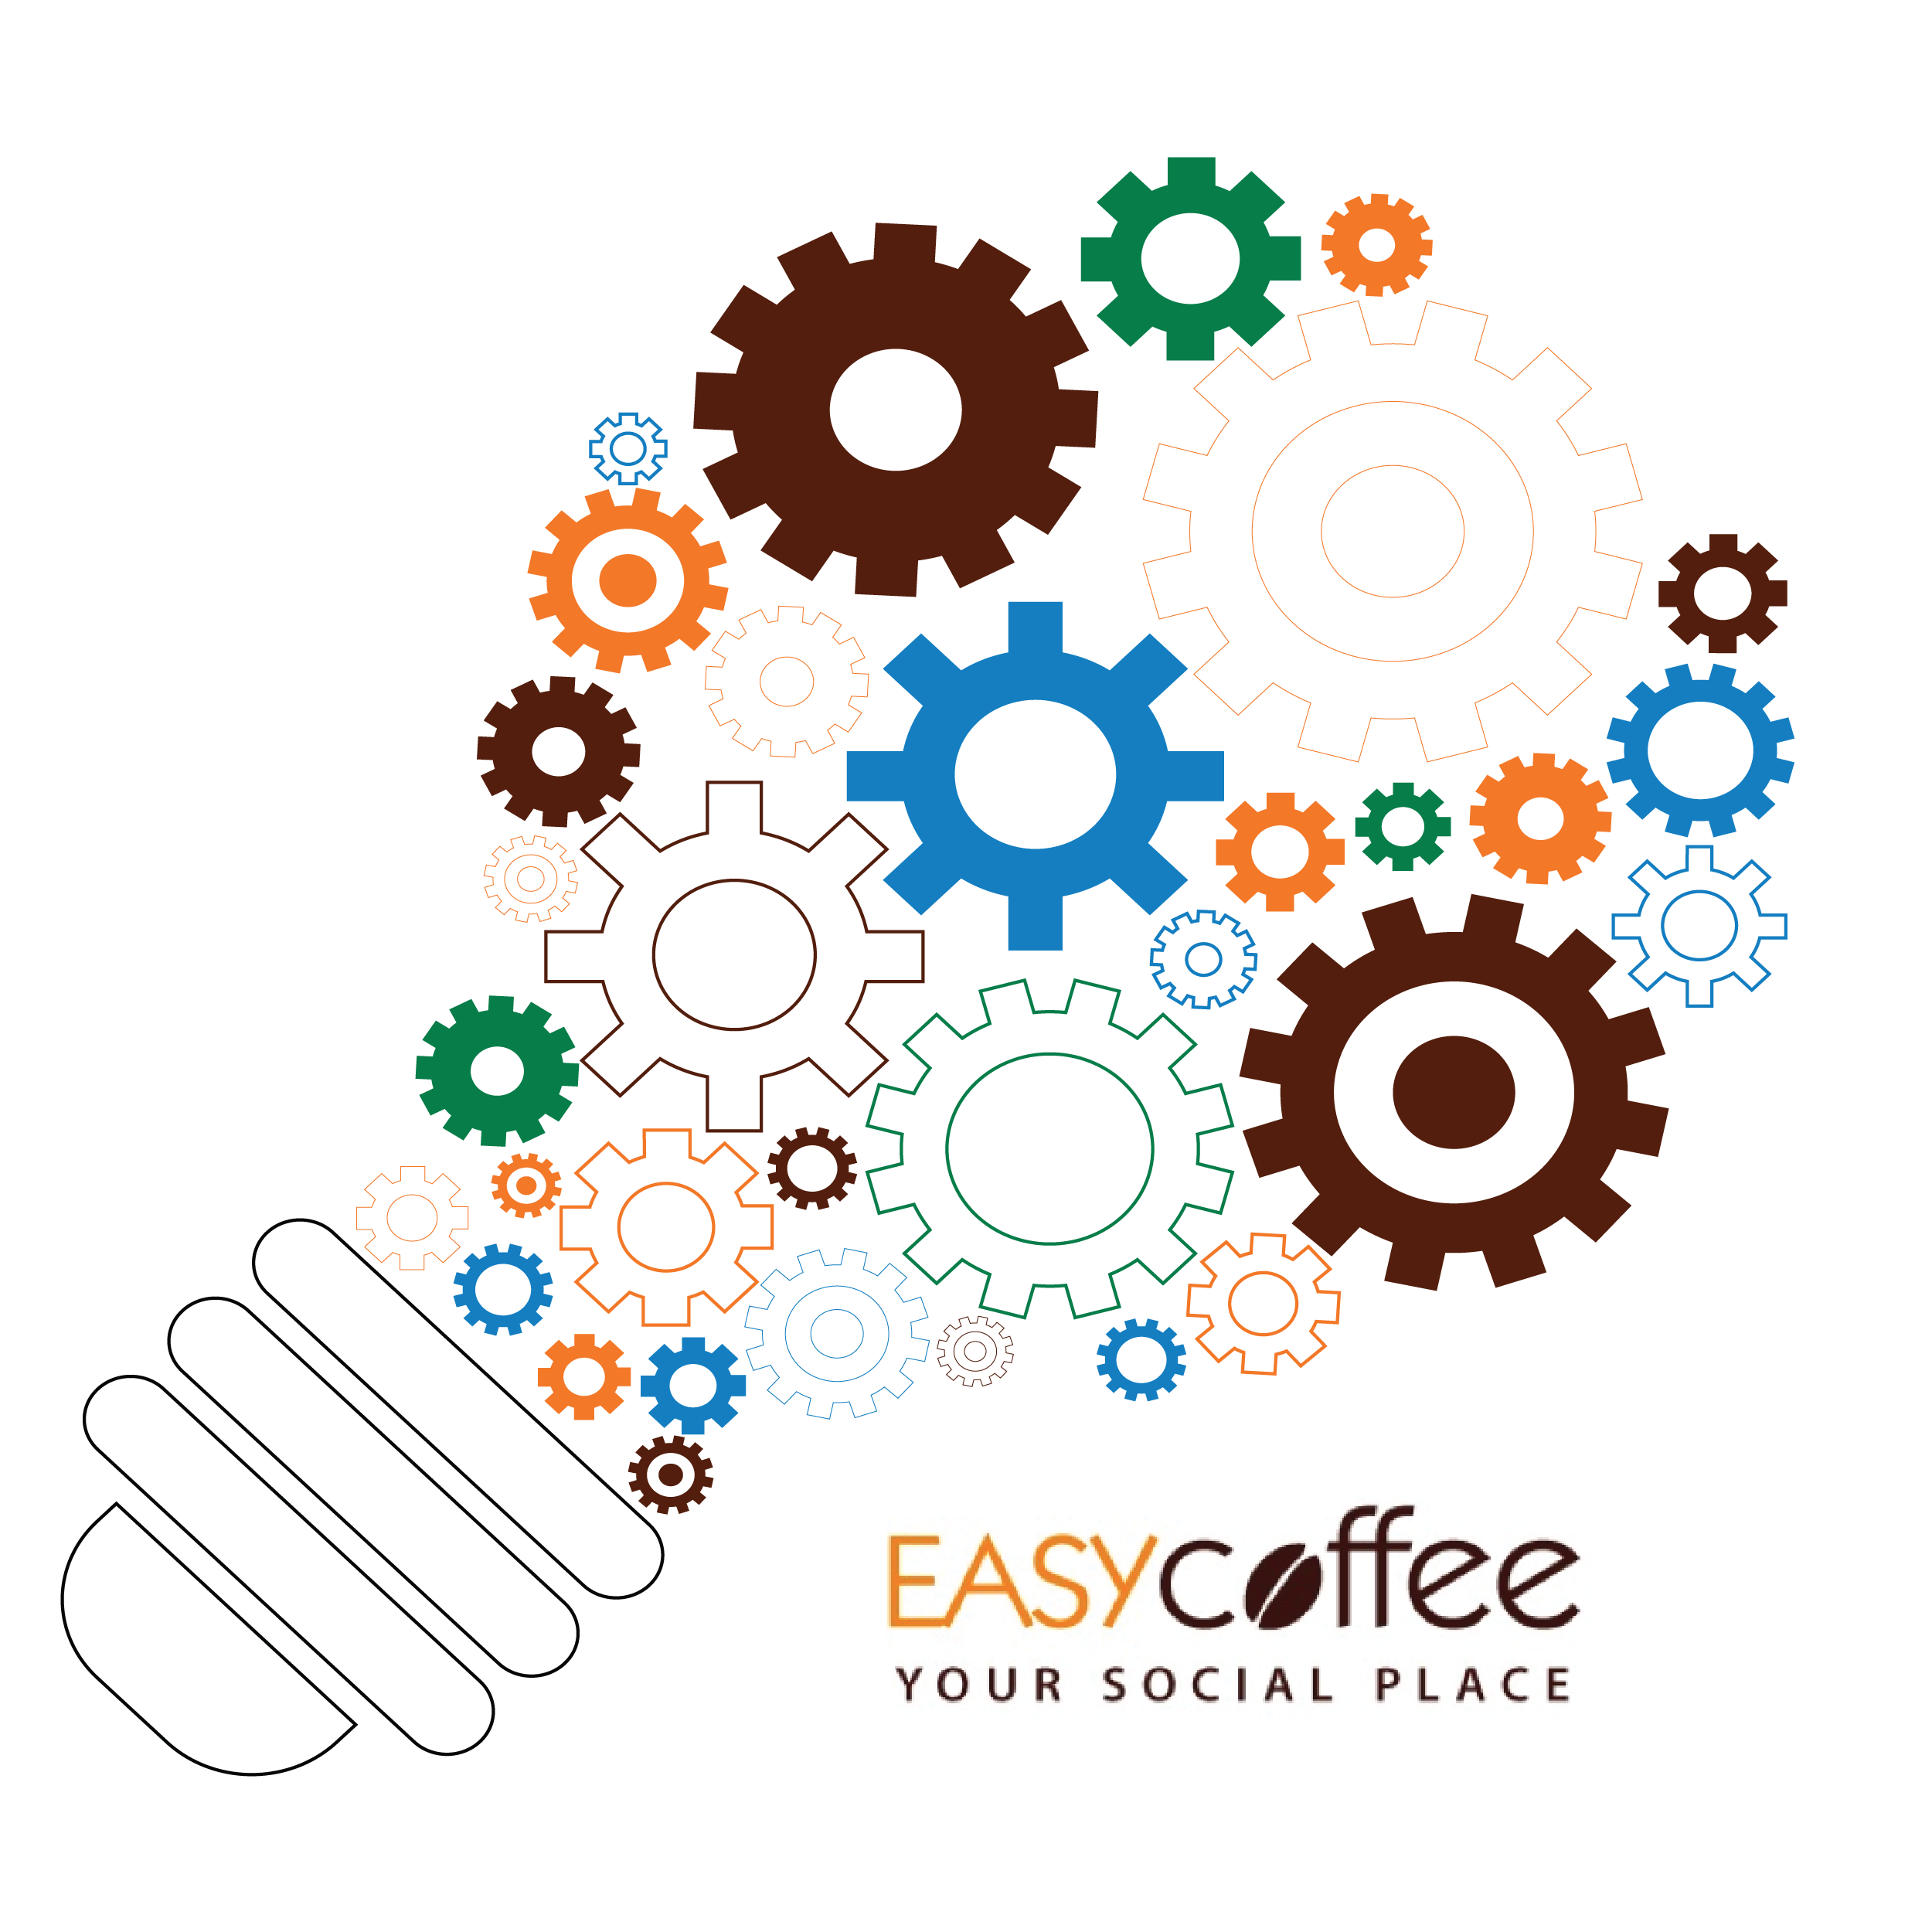 In partenza gli Easy Coffee Workshop dal 24 Gennaio 2020